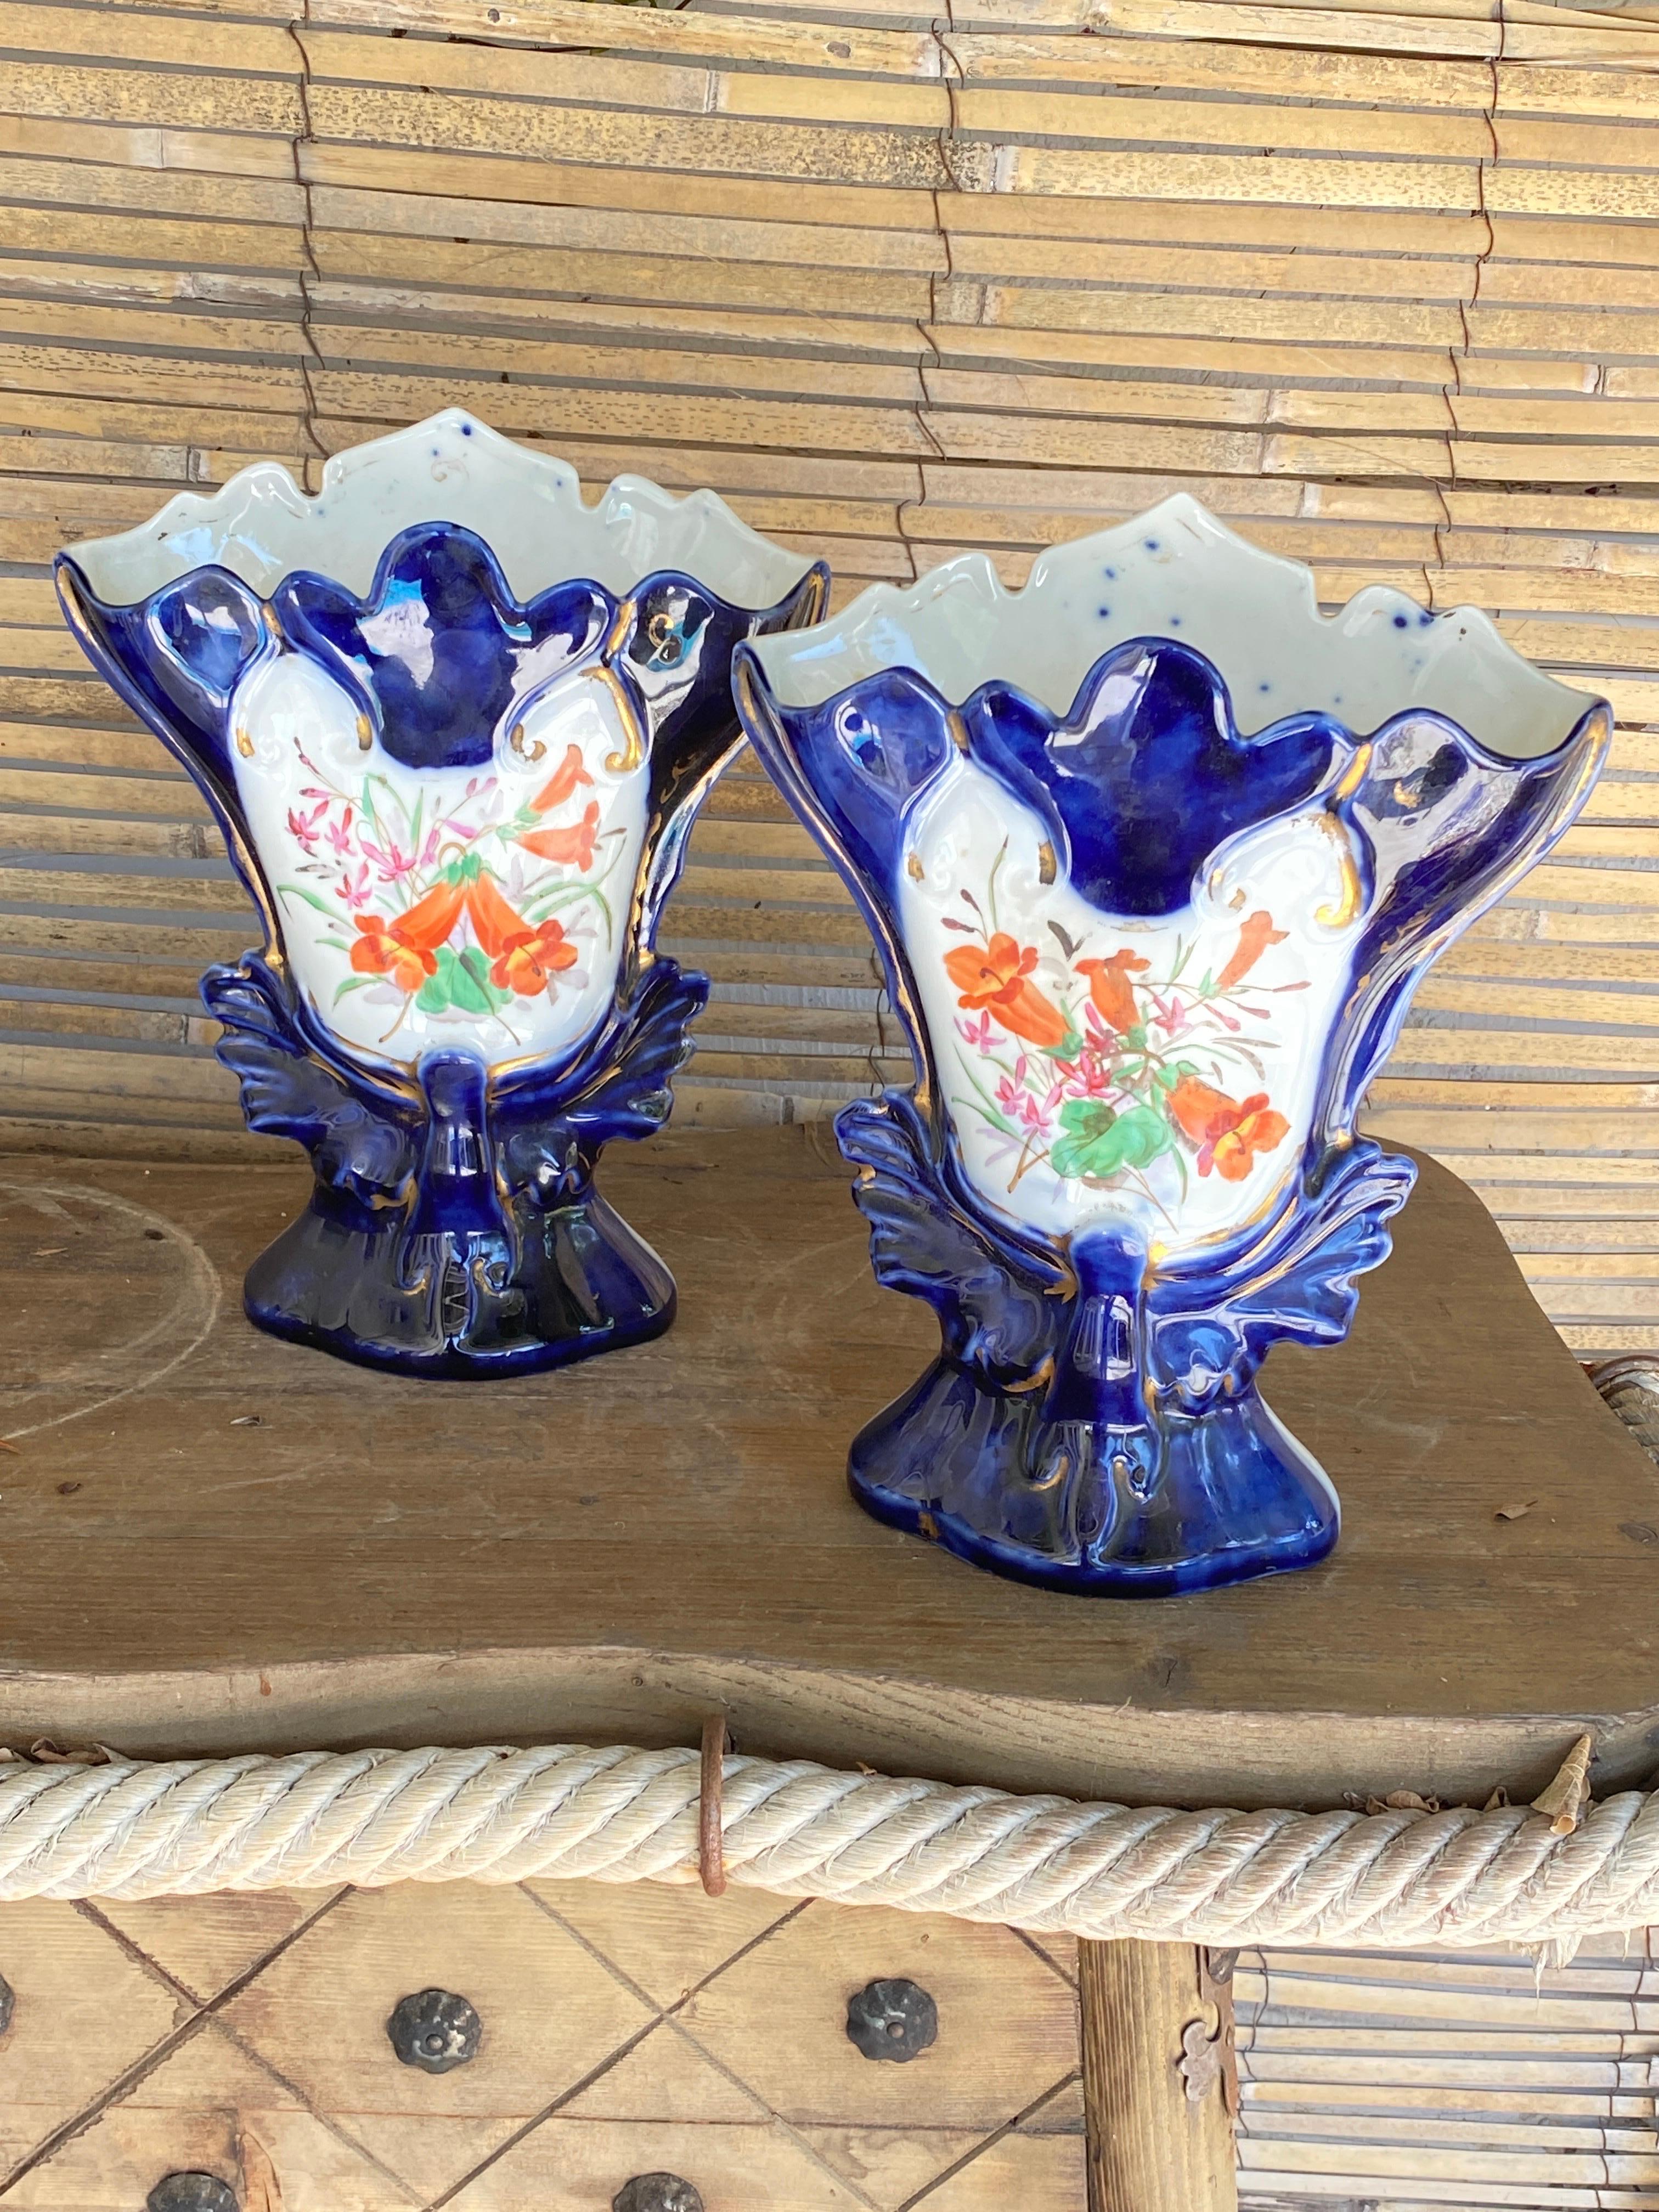 Porzellan Paar Vase Ofs Valentine Altes Paris Dekor Blumenstrauß XIX. Jahrhundert
Herstellung von 